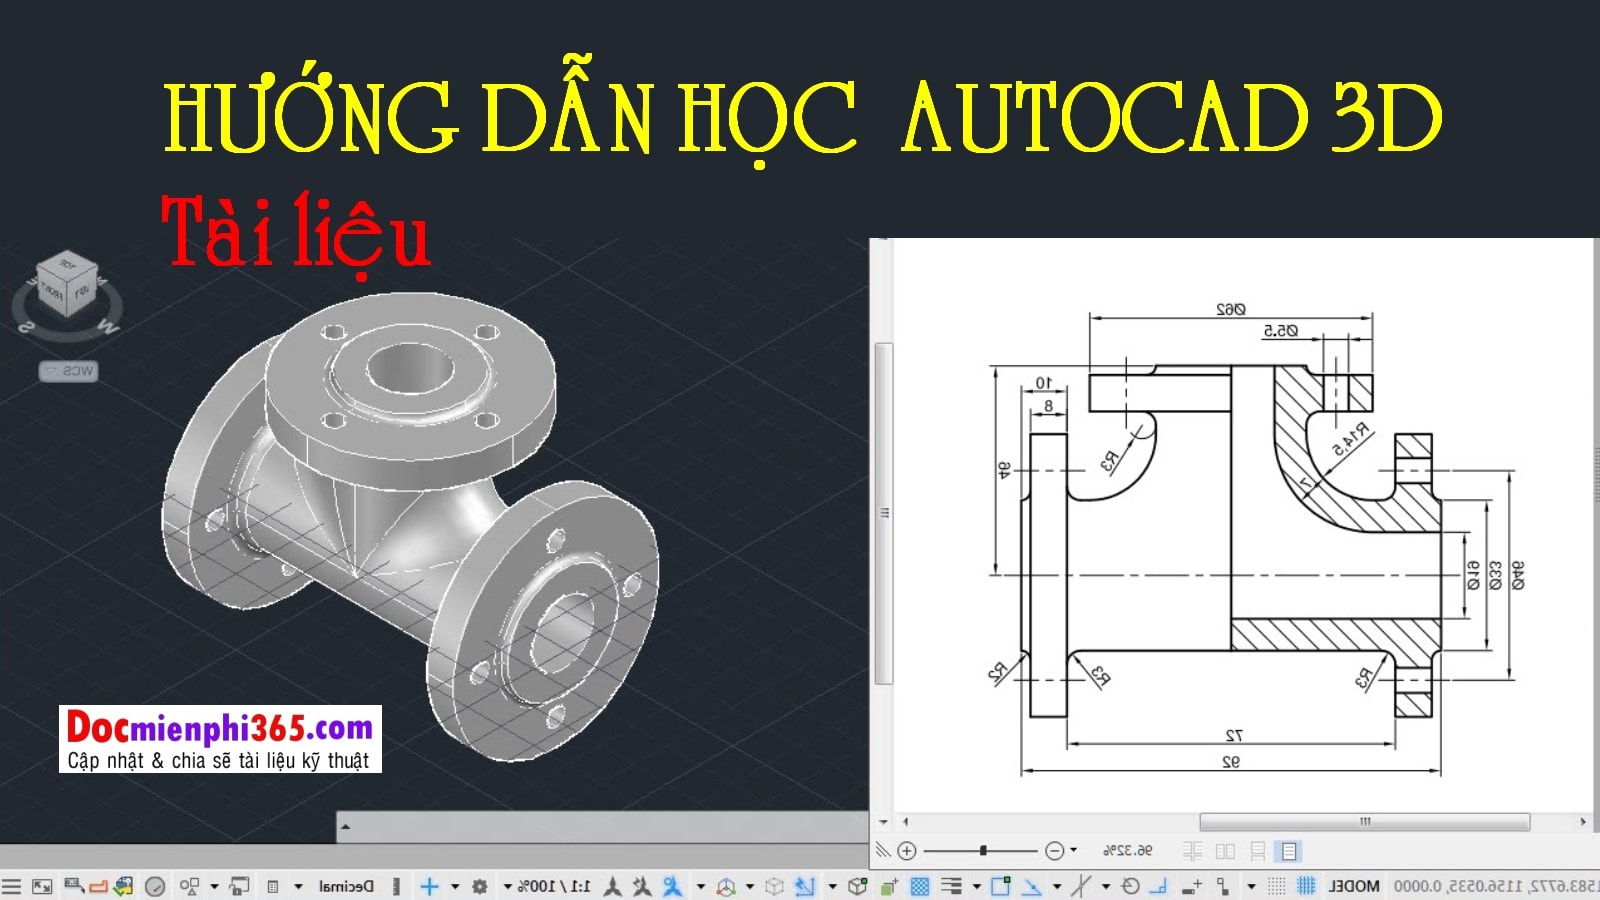 Dạy vẽ AutoCAD 3D cơ bản  bài 1 thực hành vẽ AutoCAD 3D hình khối cơ bản   YouTube